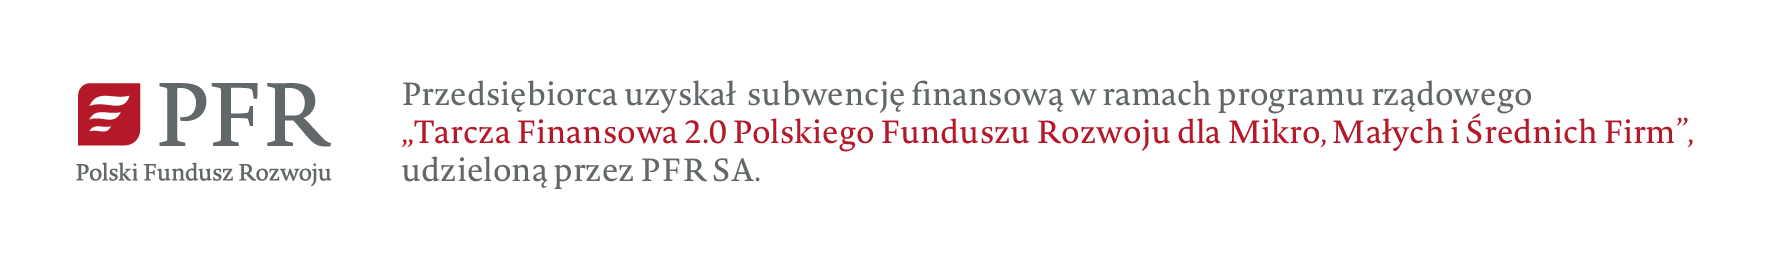 Przedsiębiorca uzyskał subwencję finansową w ramach programu rządowego Tarcza Finansowa 2.0 Polskiego Funduszu Rozwoju dla Mikro, Małych i Średnich Firm udzieloną przez PFR SA.